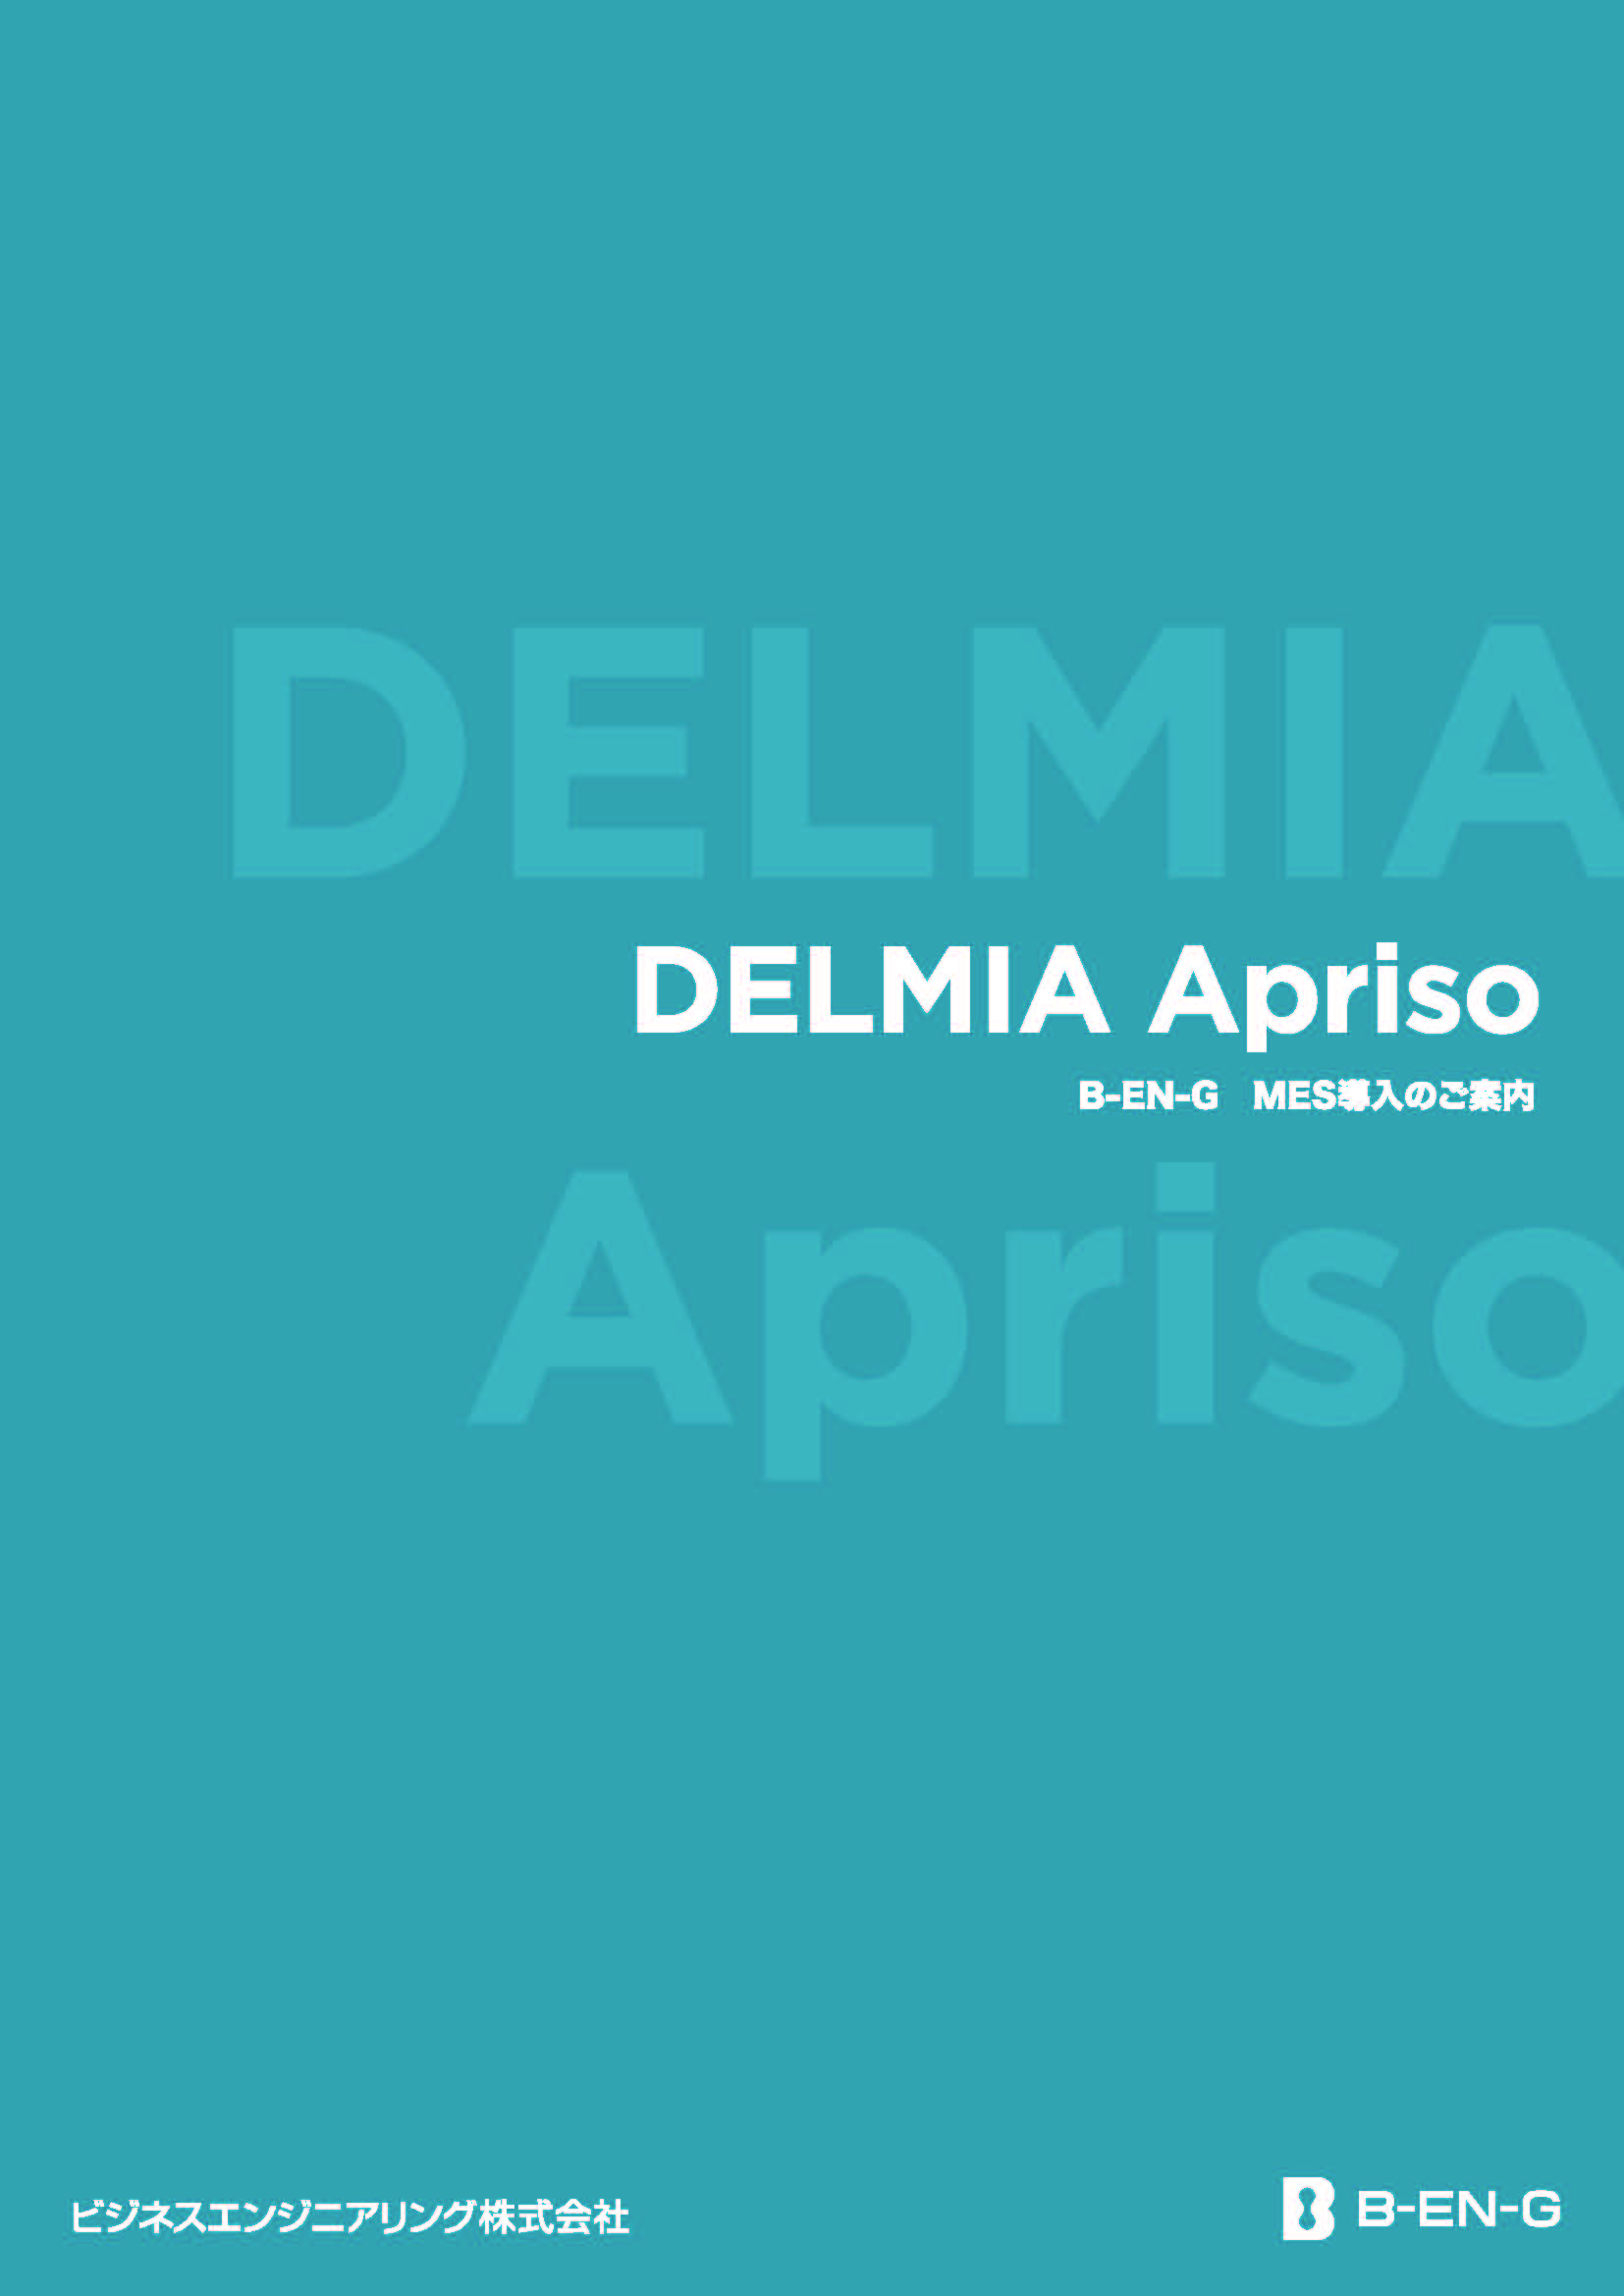 Delmia Apriso